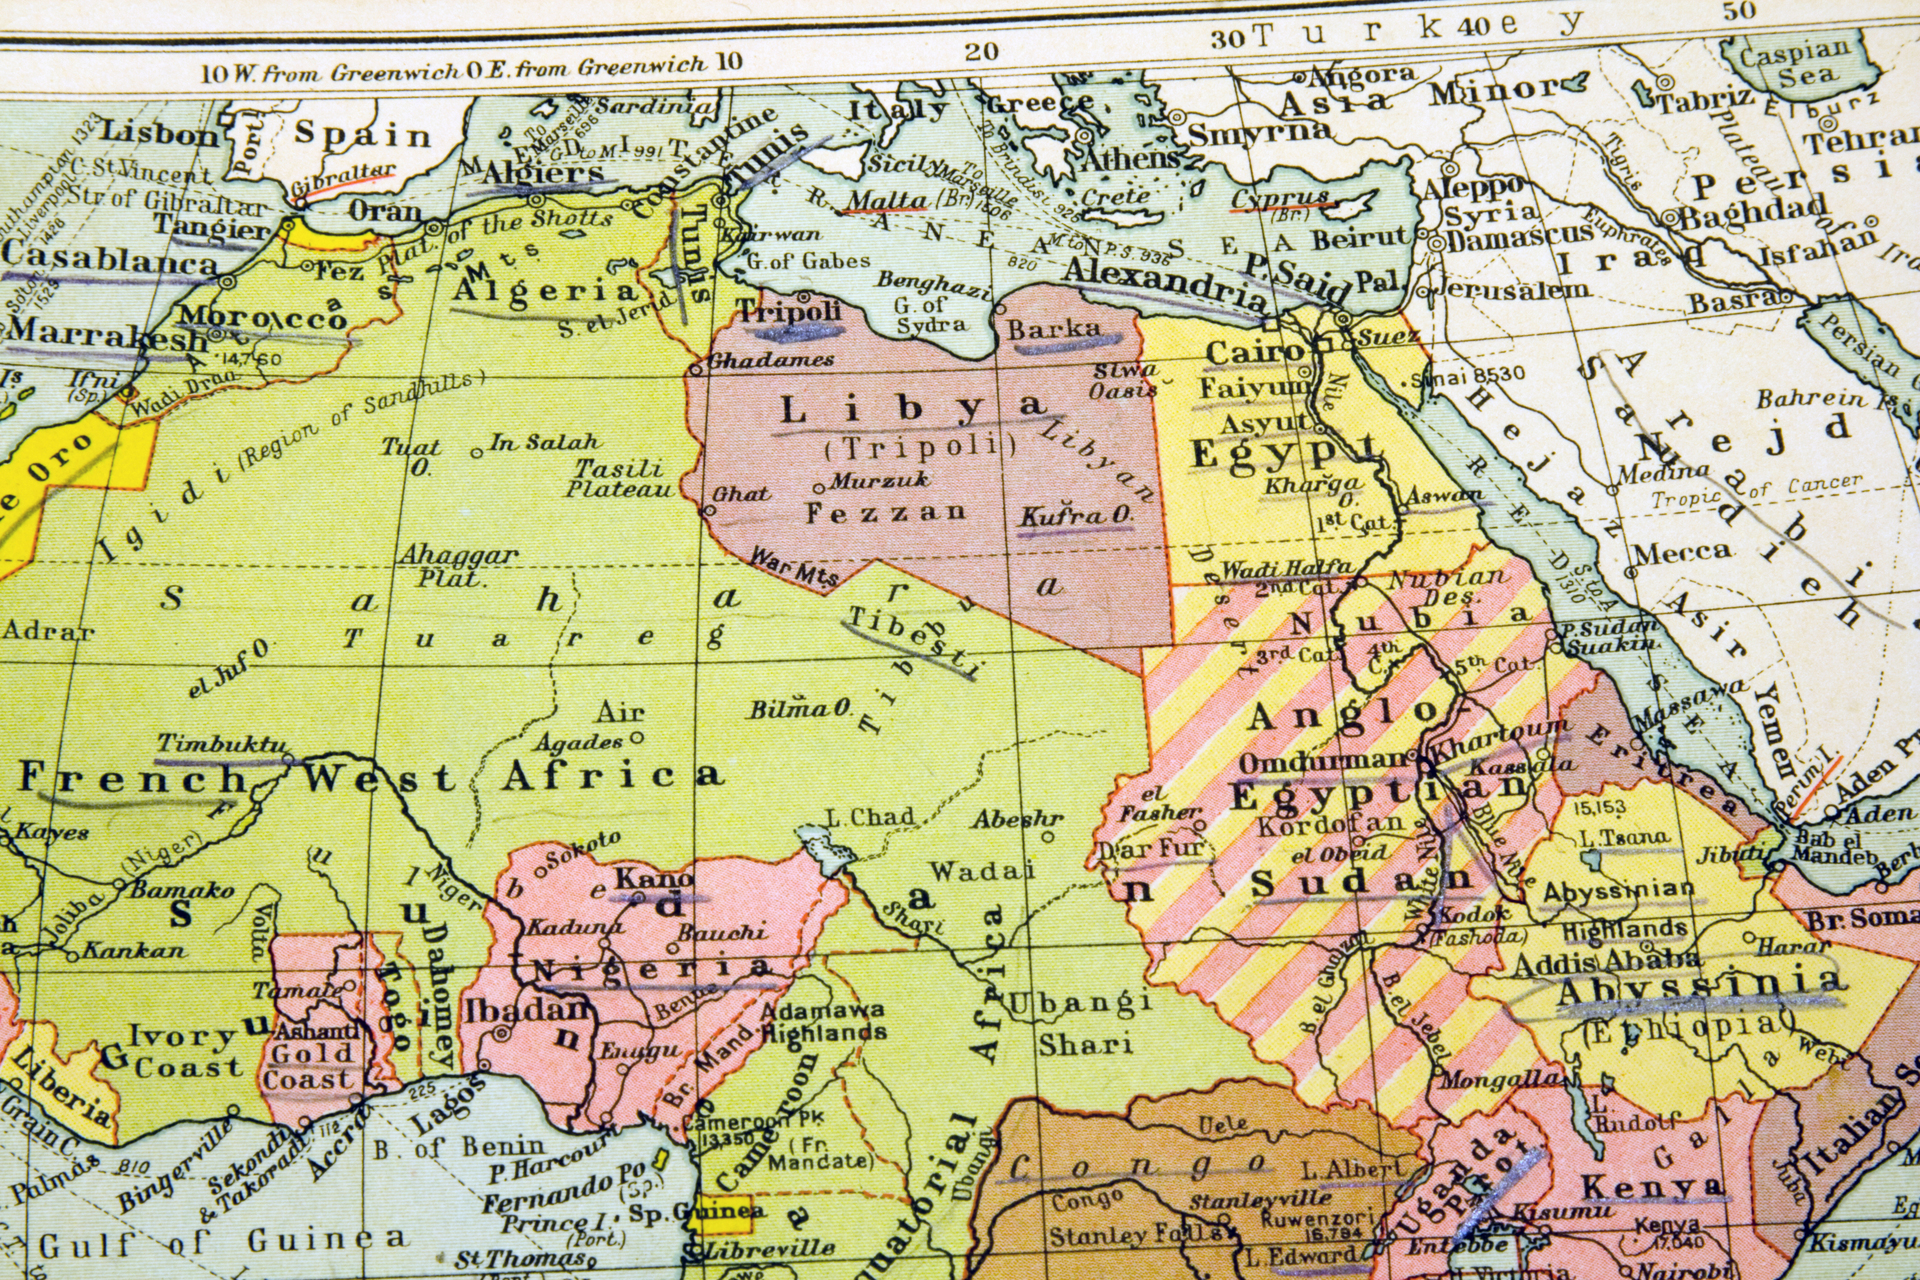 Znacznik w kształcie Afryki na mapie, symbolizujący obszar, w którym wydobywany jest uran